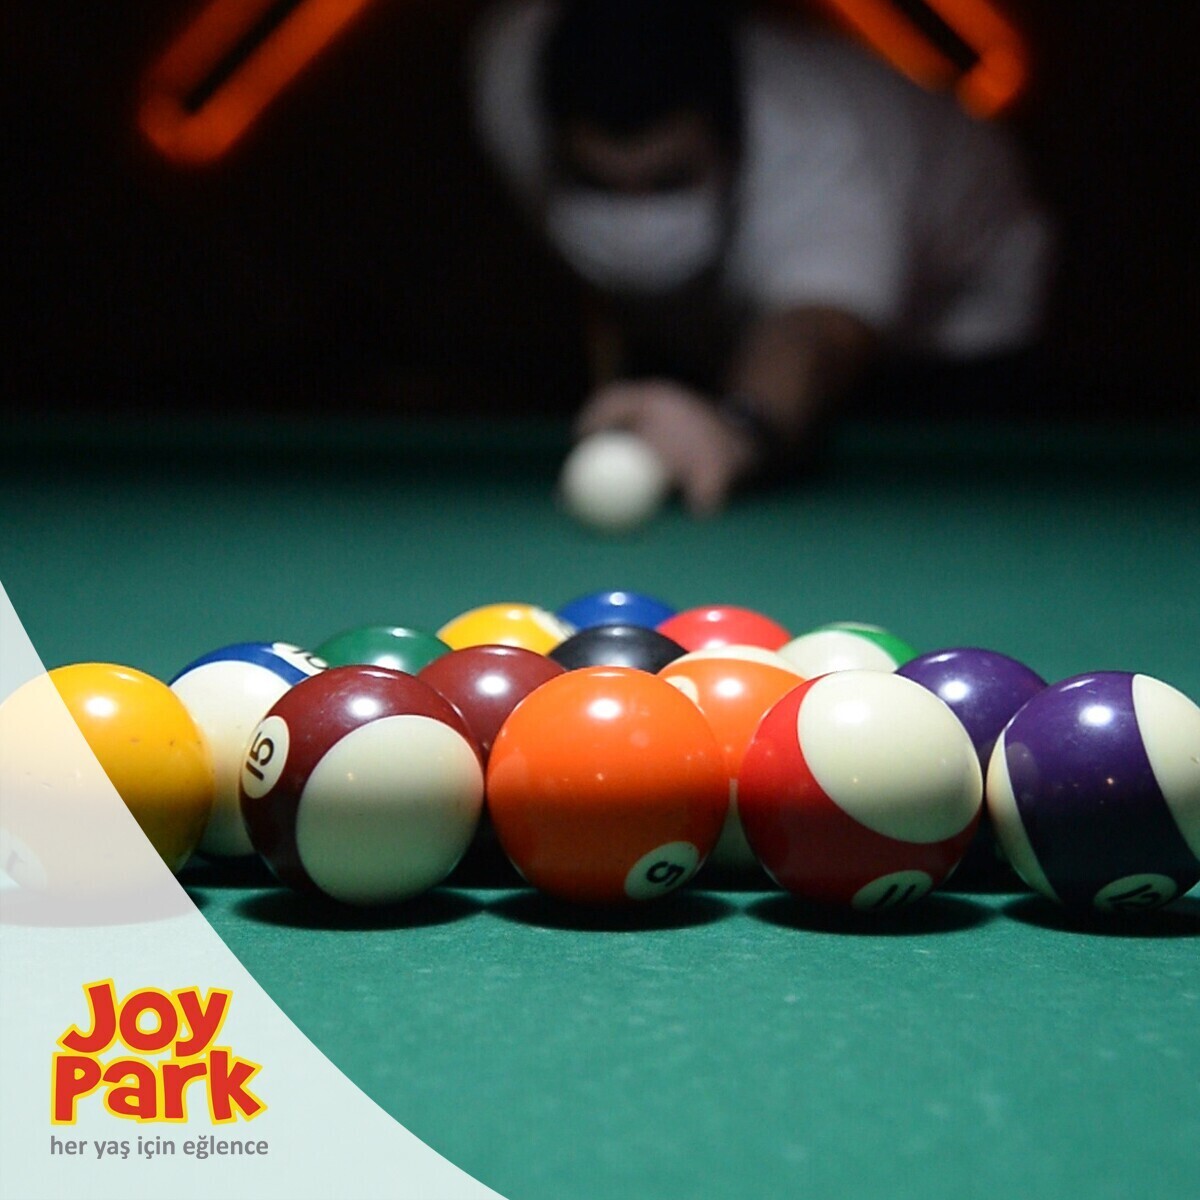 JoyPark Bursa Şubelerinde Geçerli 250 TL'lik Oyun Kartı 199 TL!